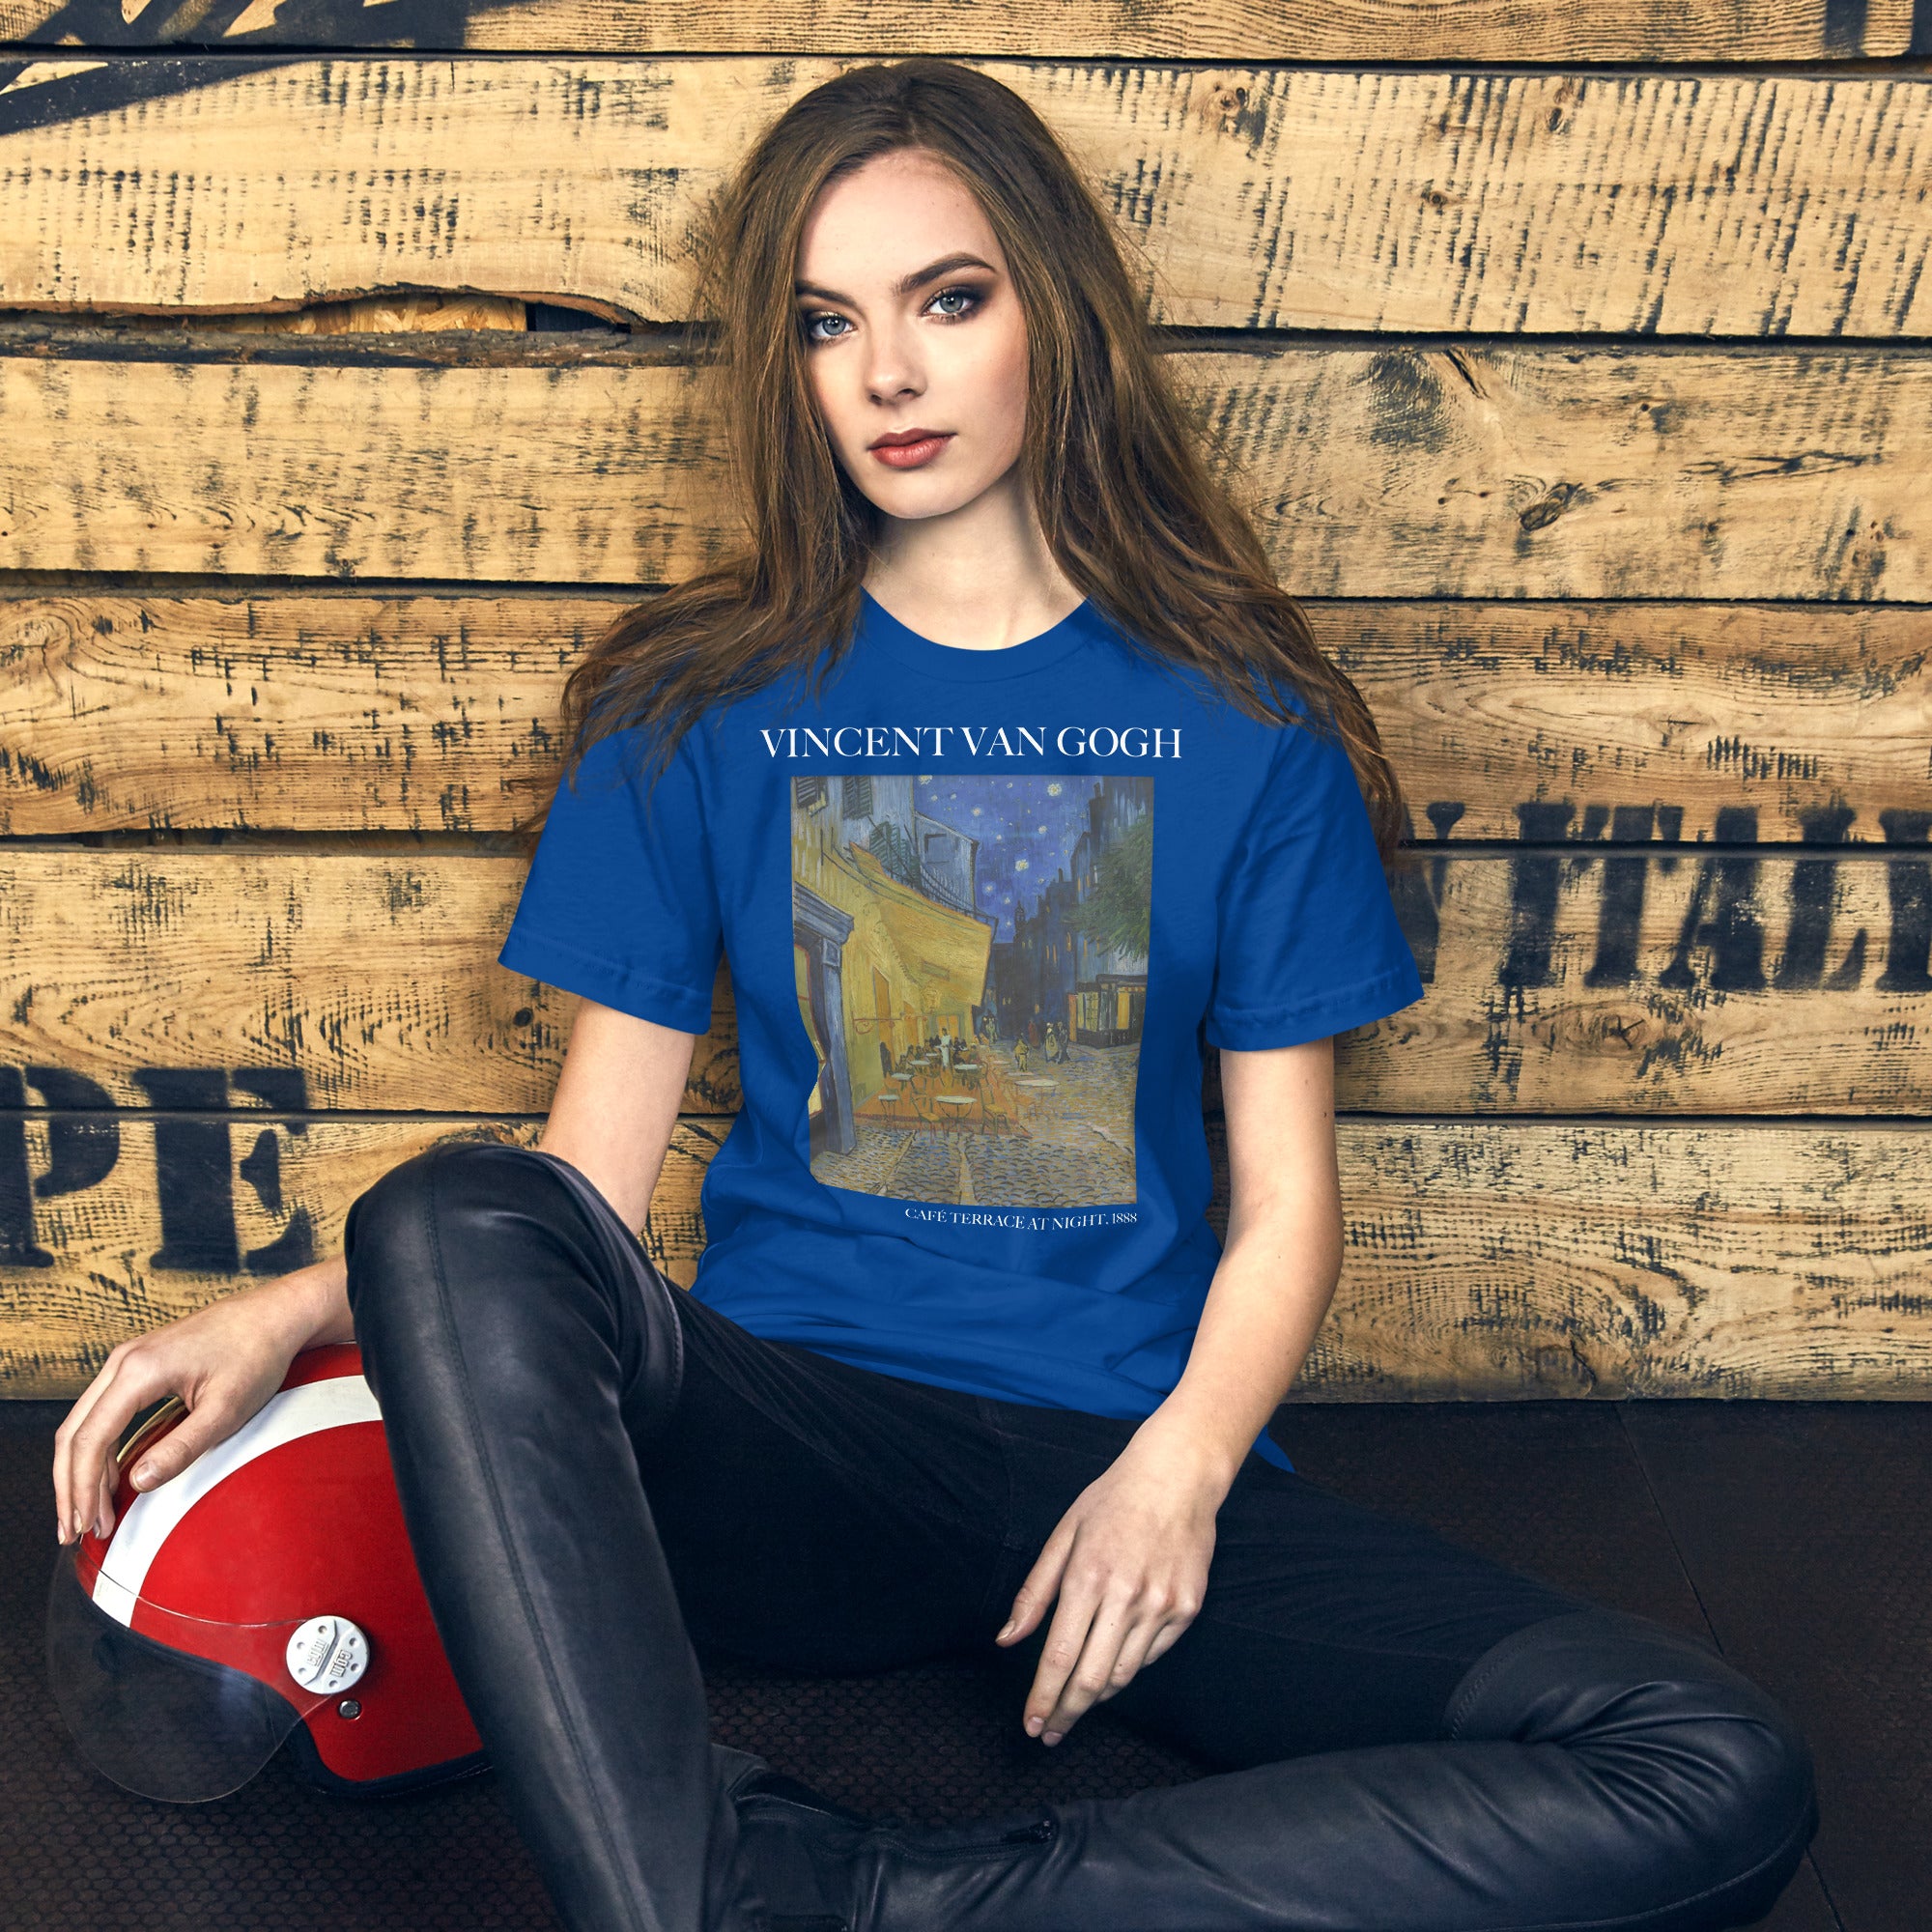 T-Shirt mit dem berühmten Gemälde „Caféterrasse bei Nacht“ von Vincent van Gogh | Unisex-T-Shirt im klassischen Kunststil